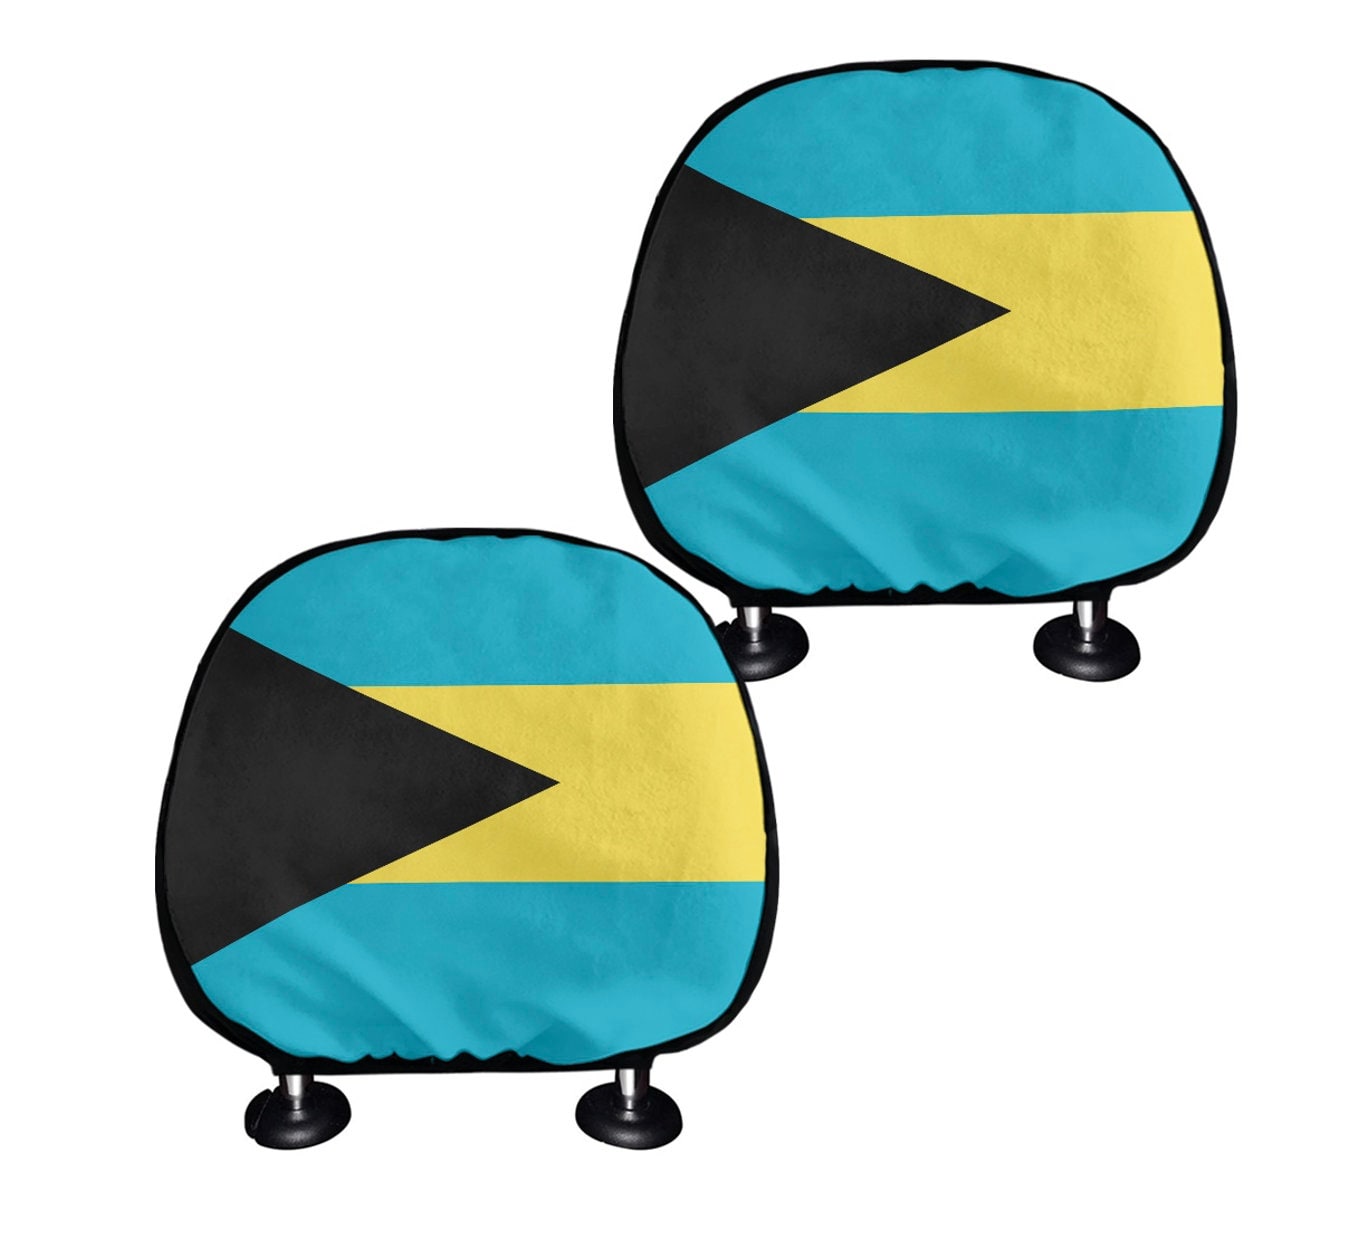 The Bahamas Headrest Cover